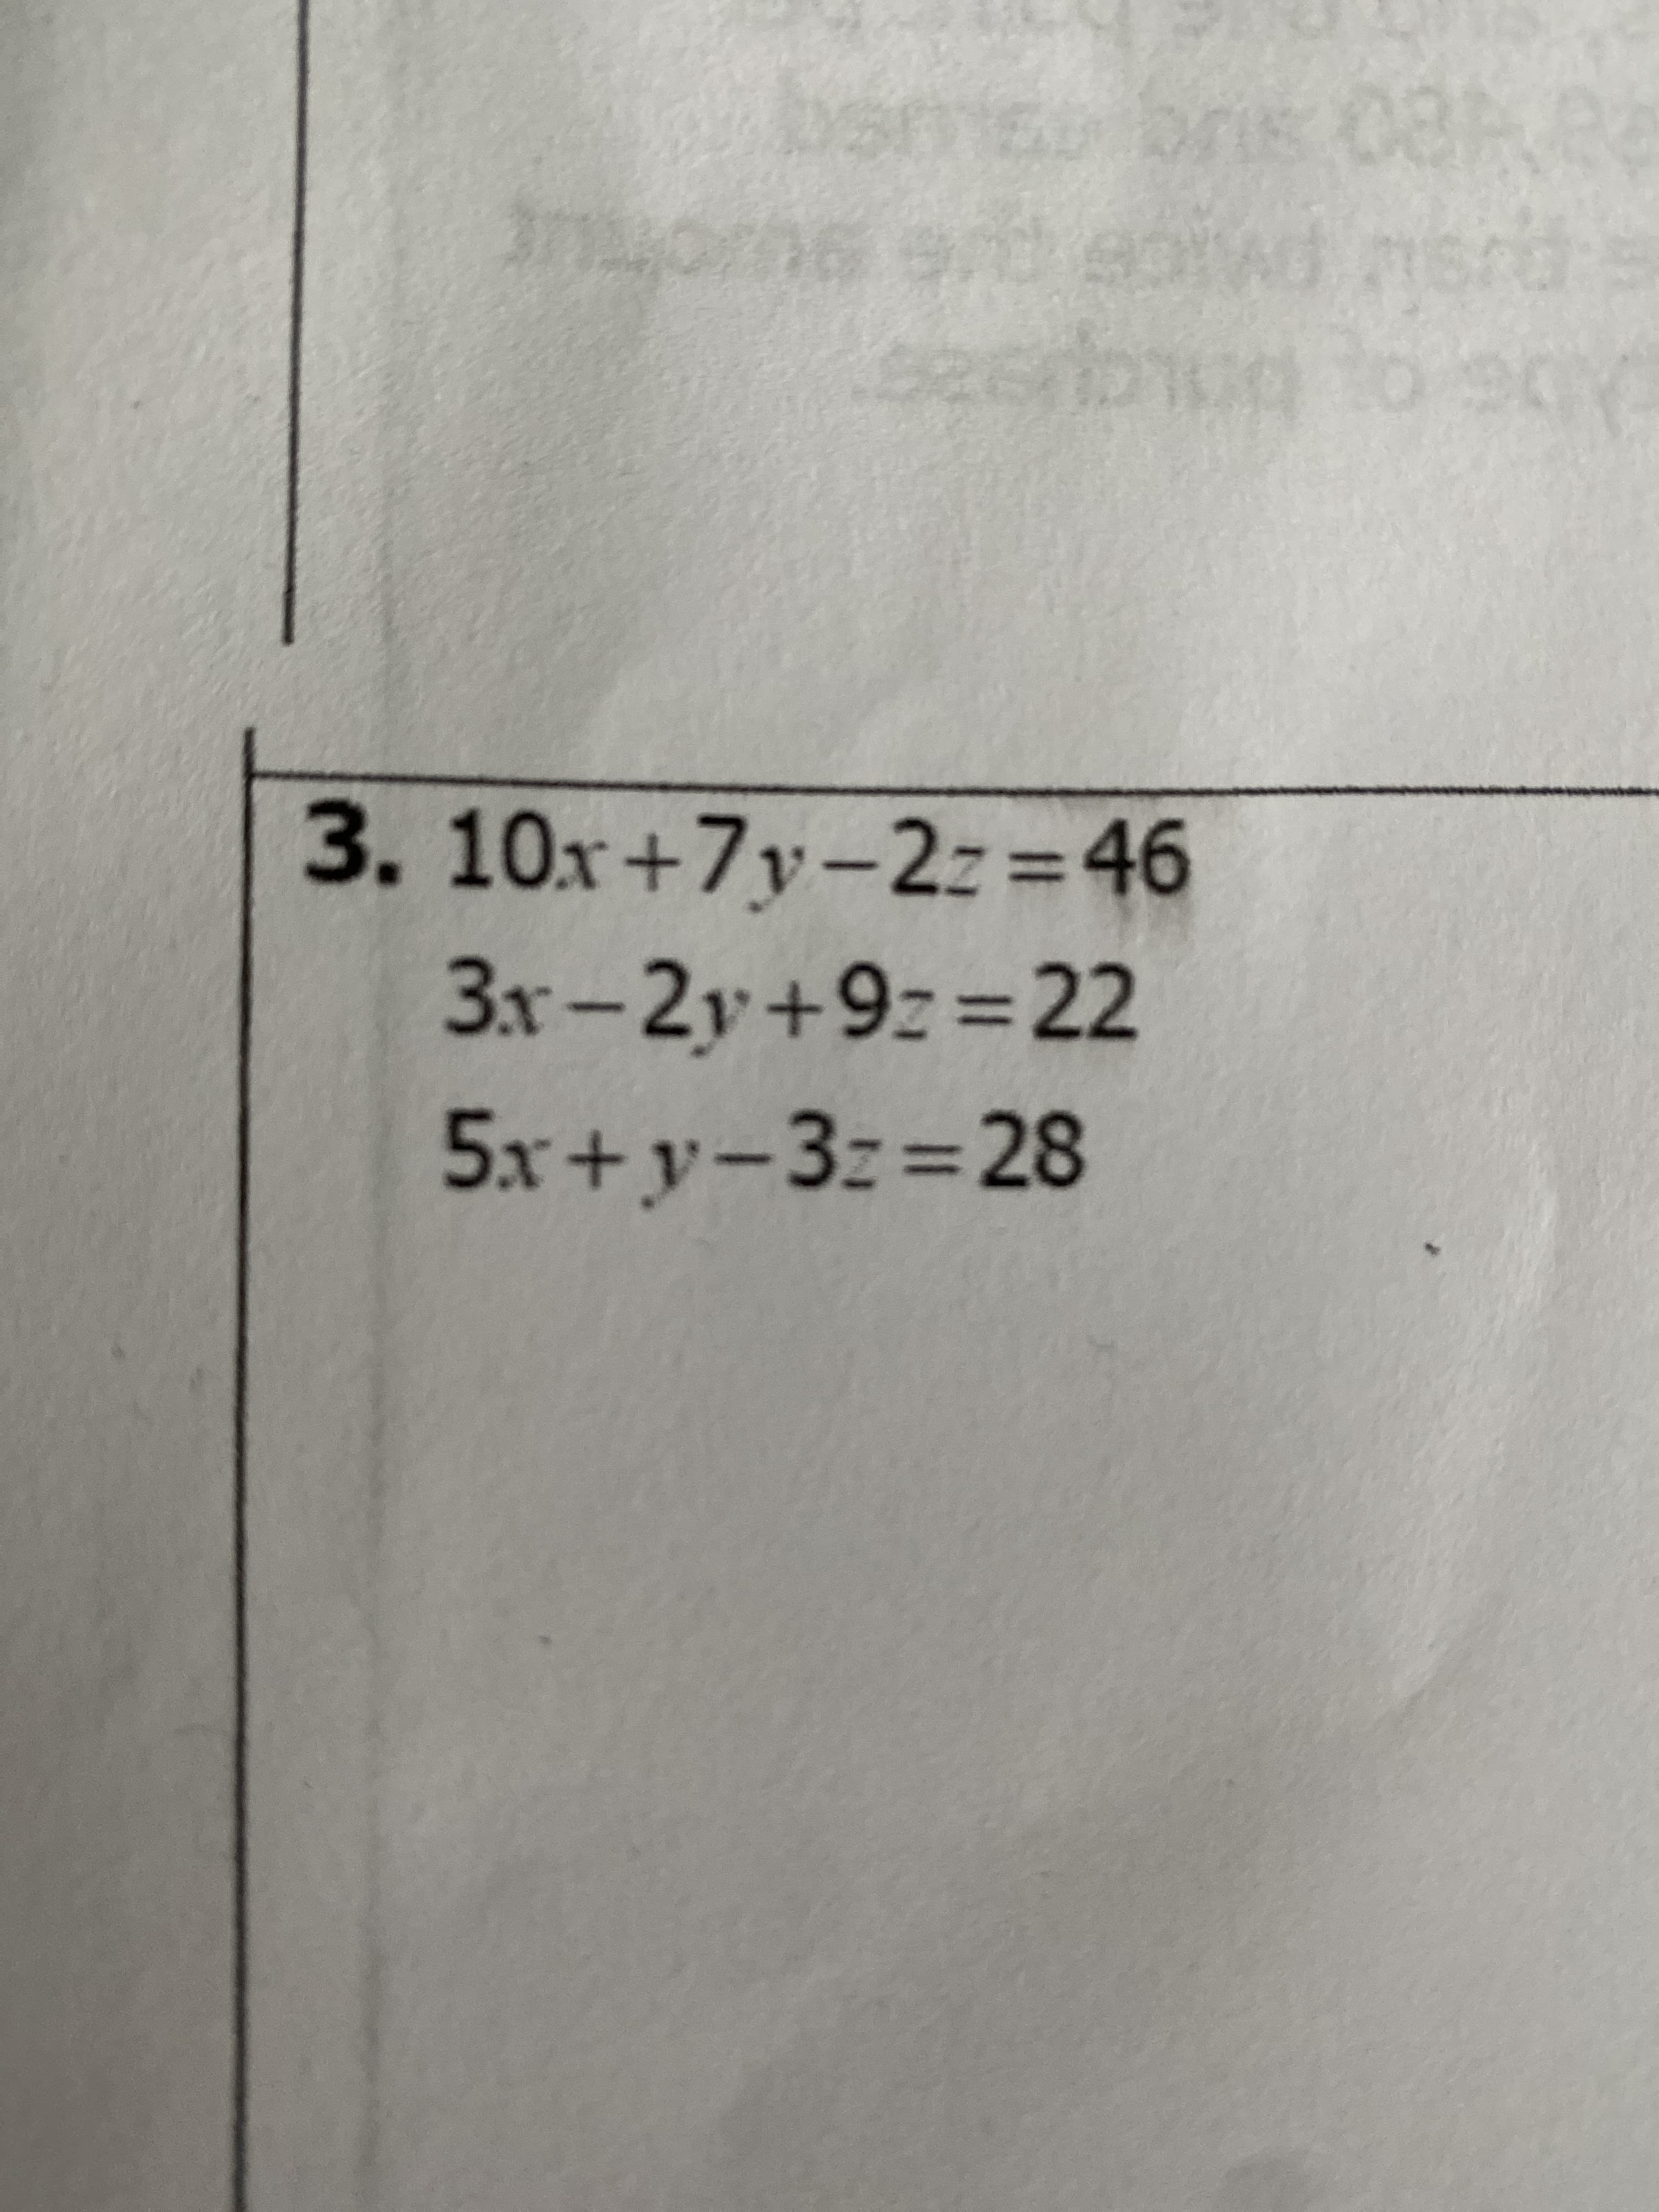 3.10x+7y-2z=46
3x-2y+9z%3D22
5x+y-3z%3D28
